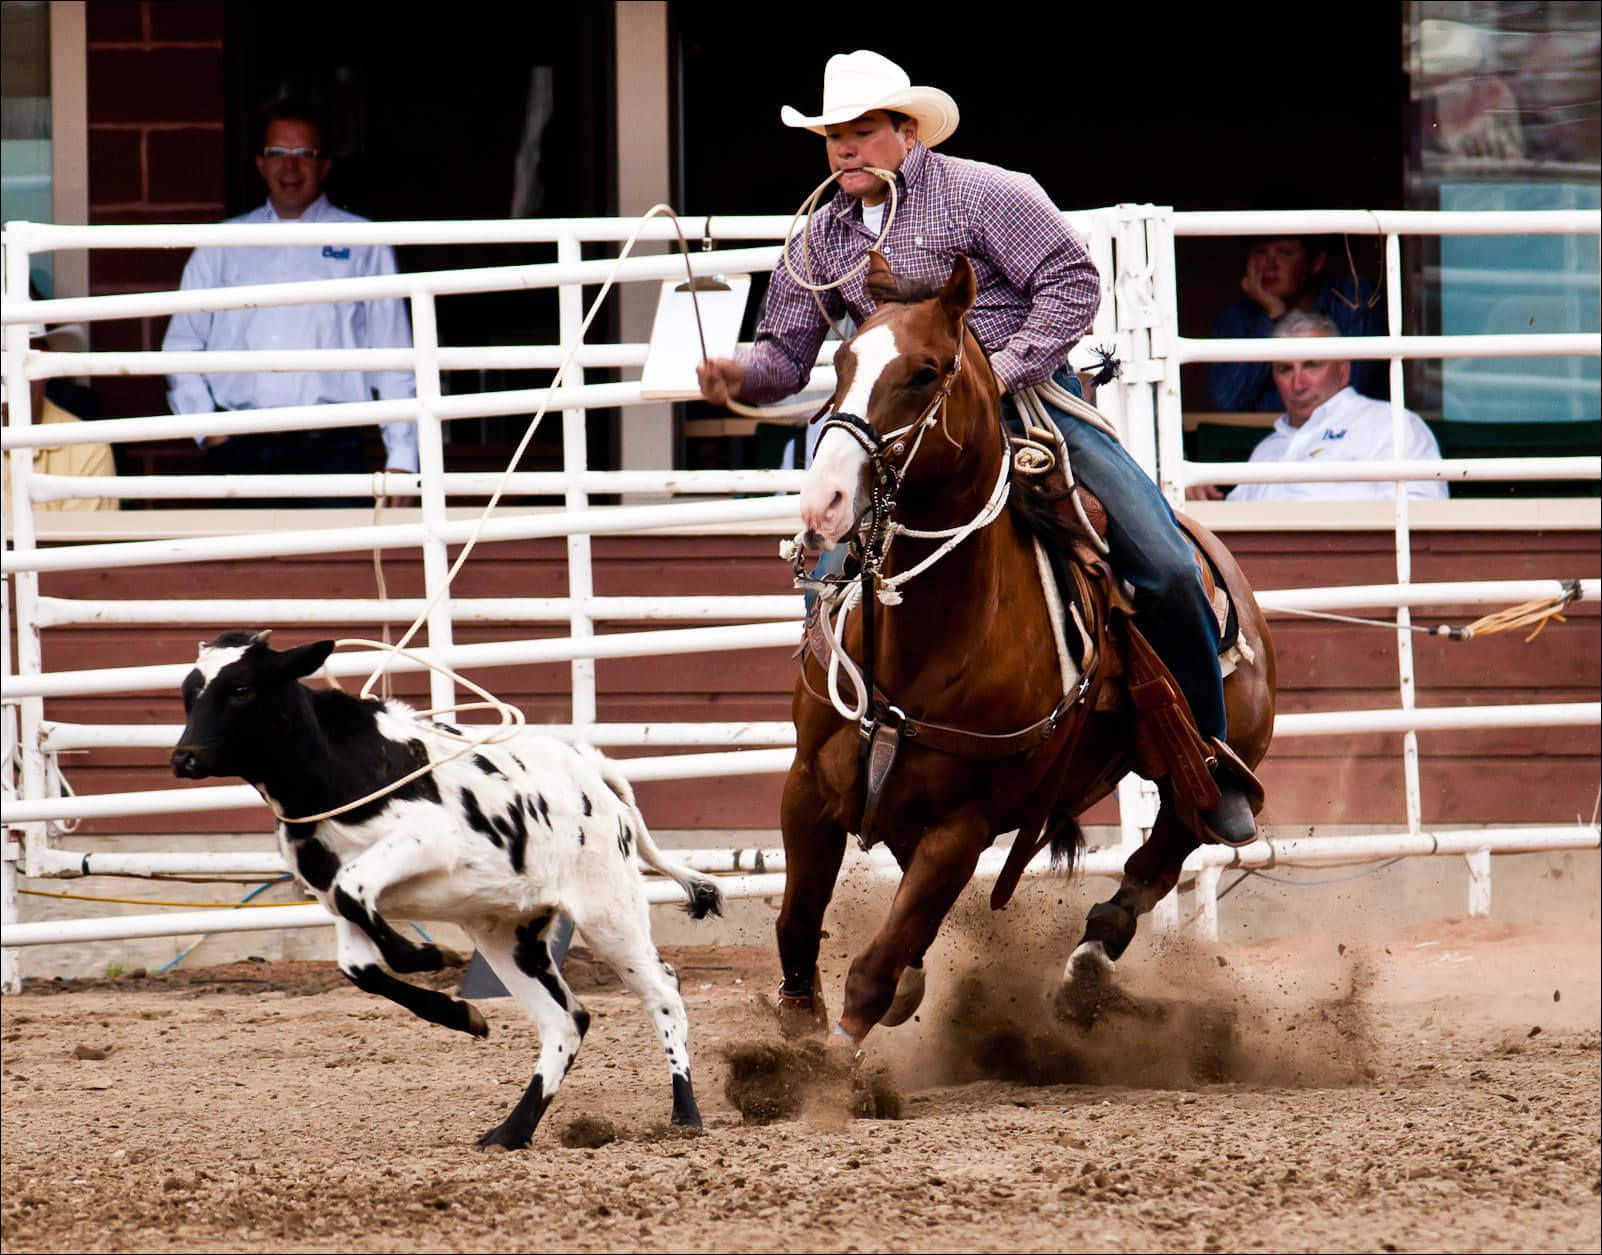 Enryttare Som Håller I Sin Cowboyhatt Samtidigt Som Han Balanserar På En Vildhäst Under En Rodeo. Wallpaper